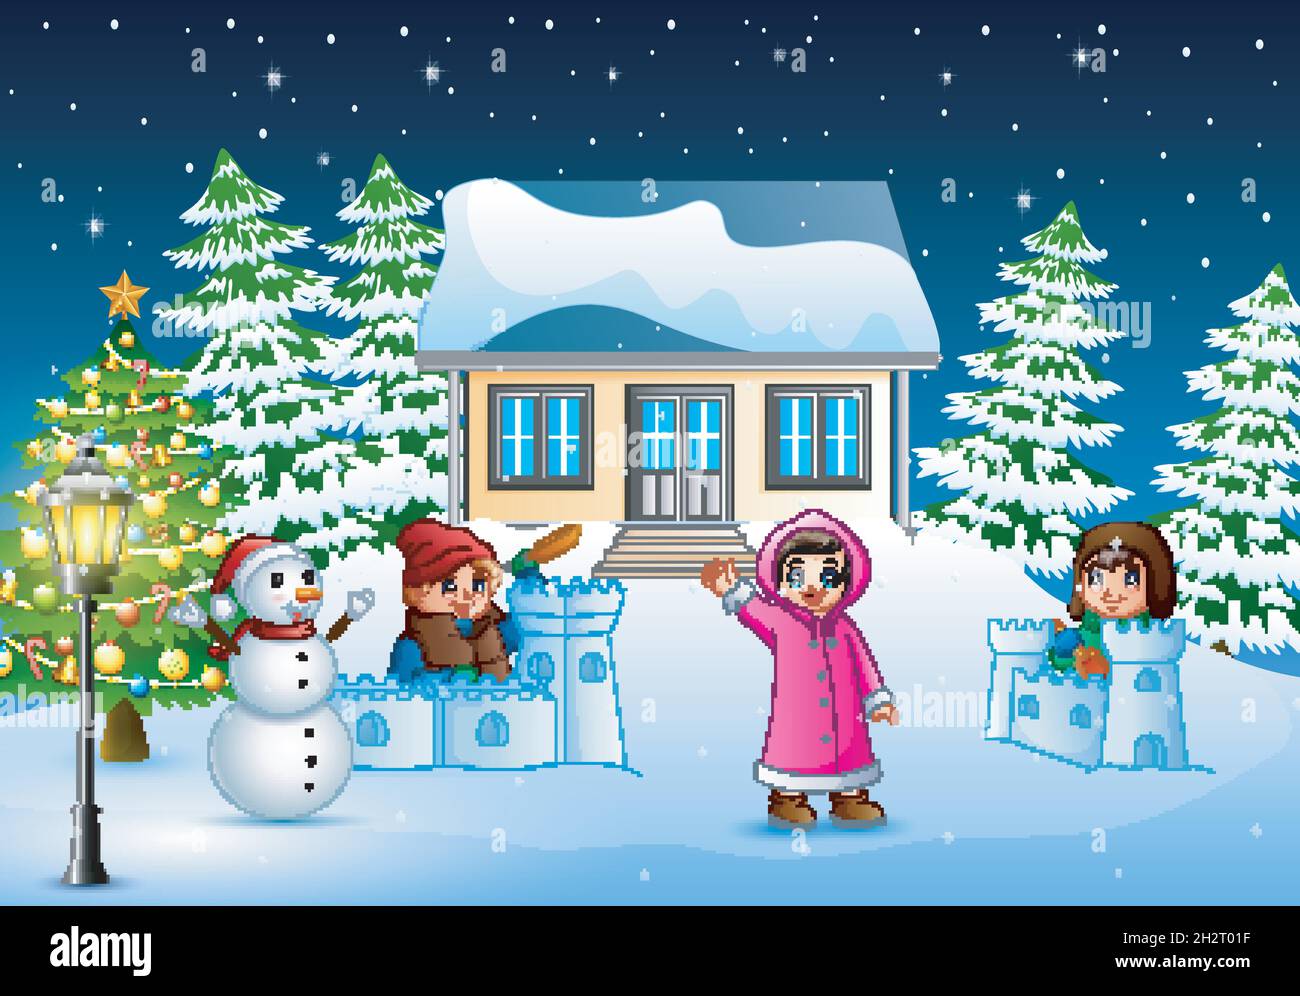 Les enfants heureux portant un hiver clotes jouant une neige le jour de noël Illustration de Vecteur